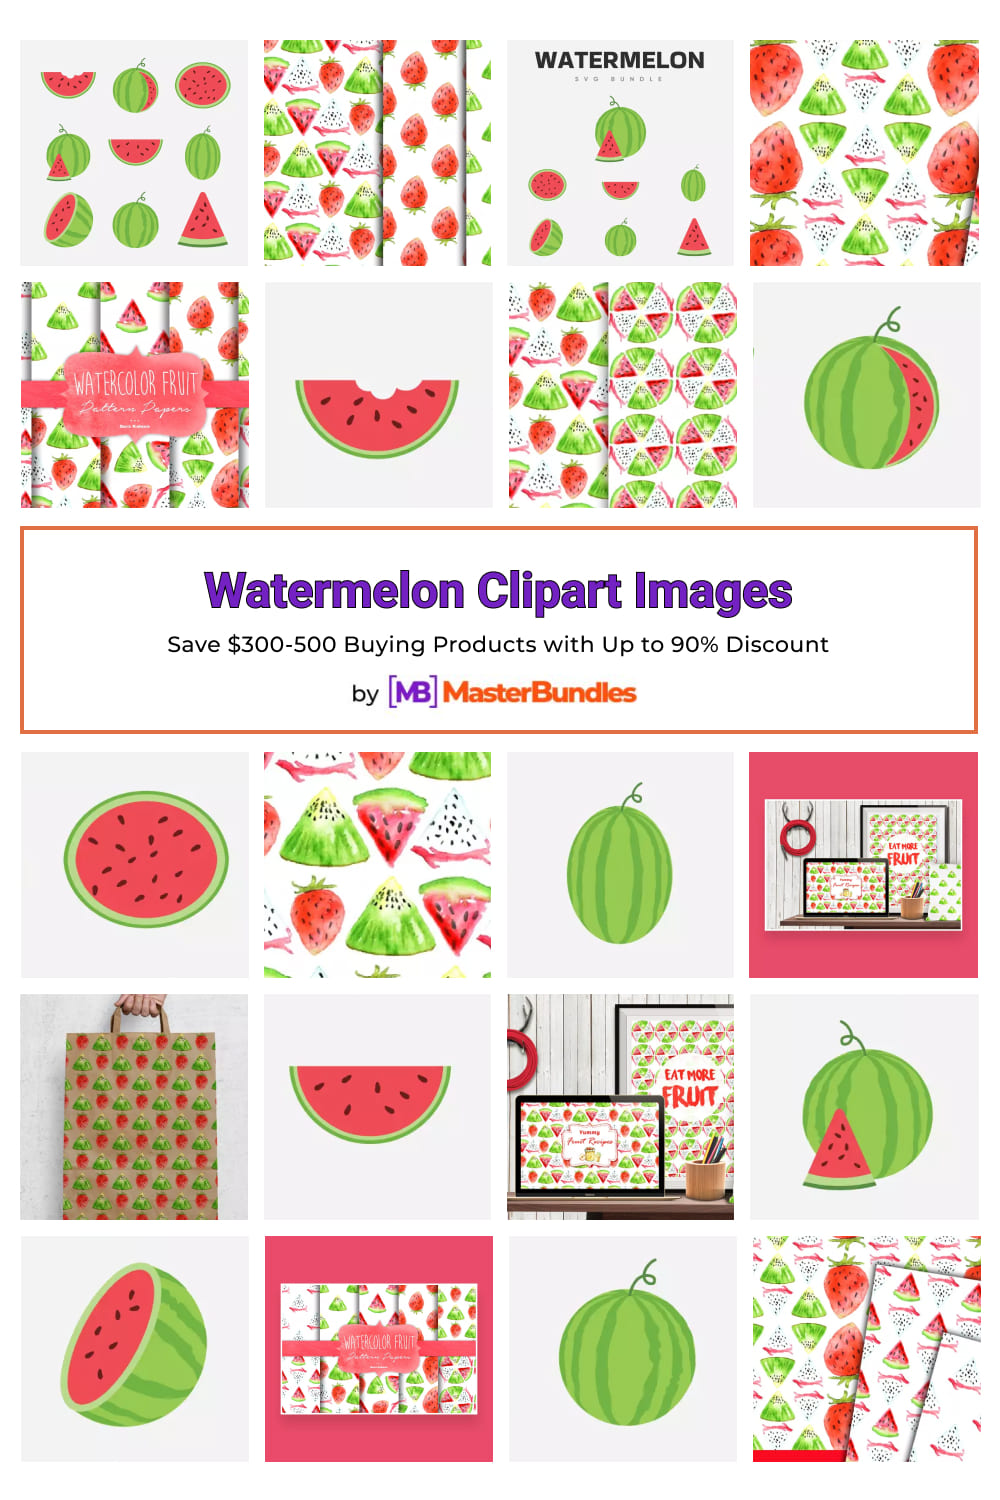 Watermelon Clipart Images Pinterest image.